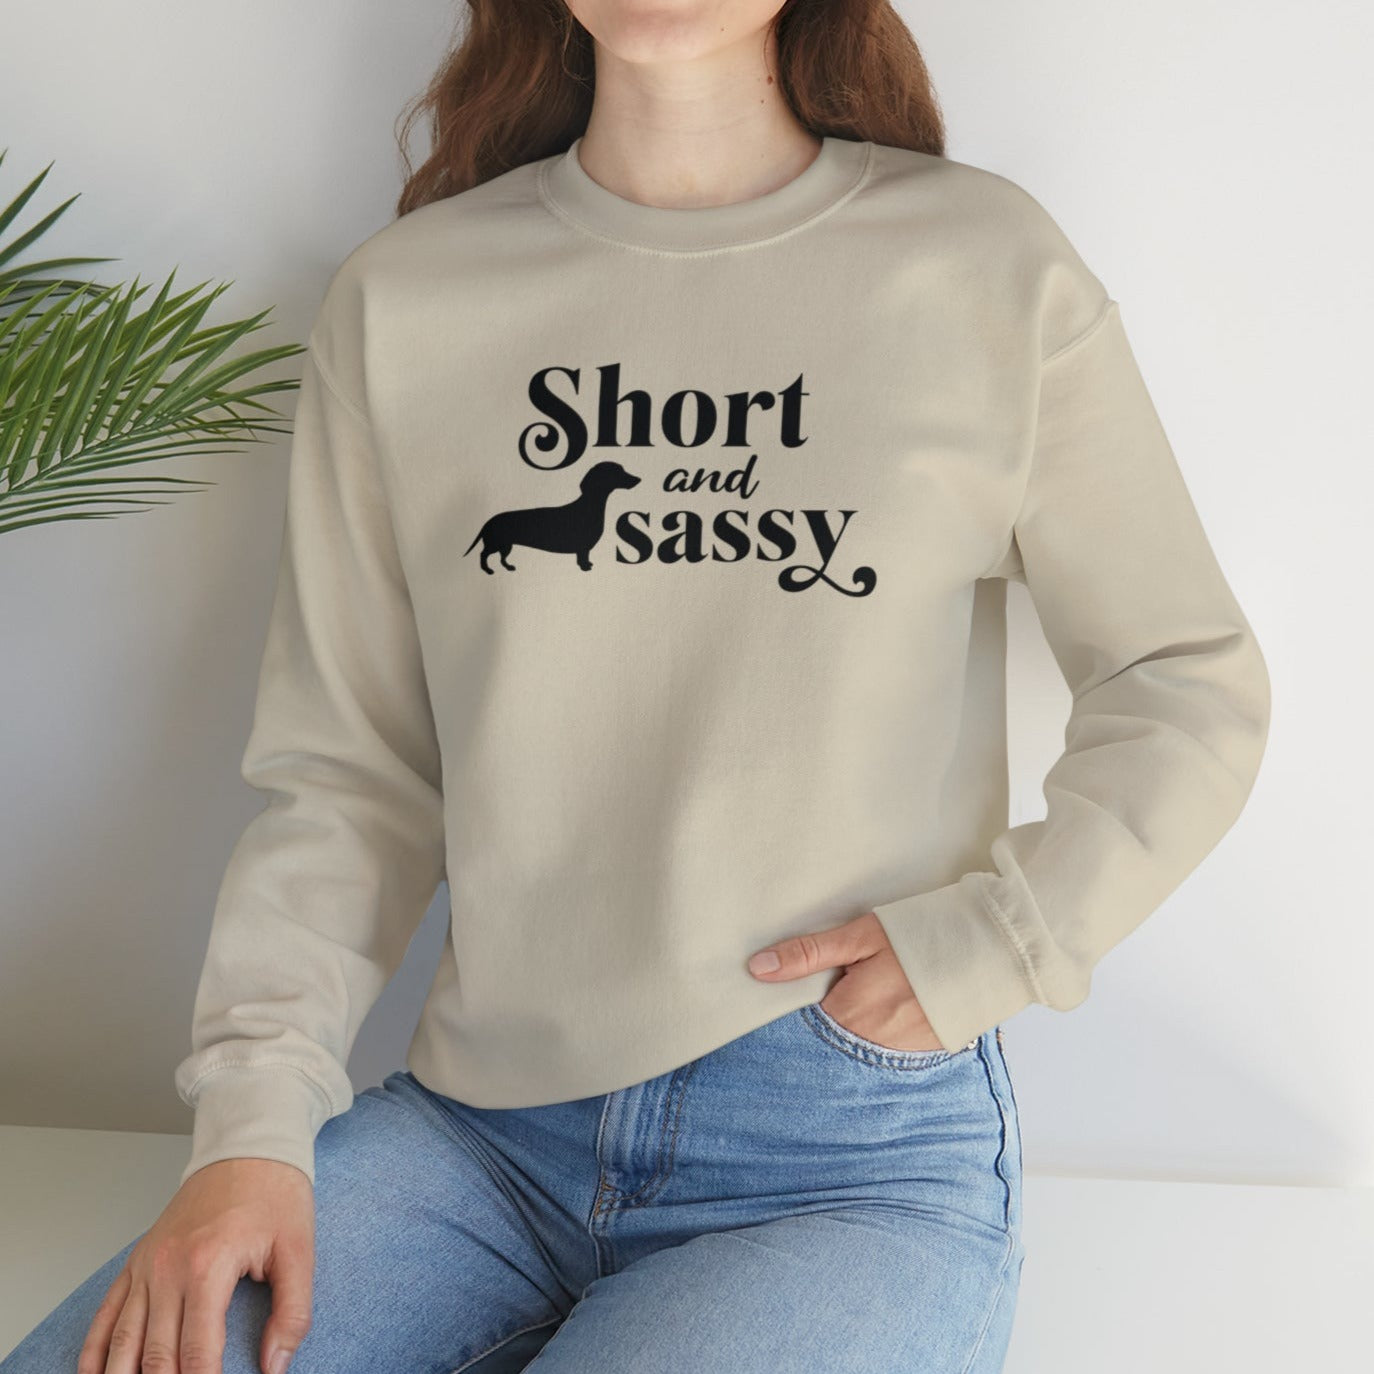 Dachshund Sweatshirt - Short And Sassy - Dachshund Gift